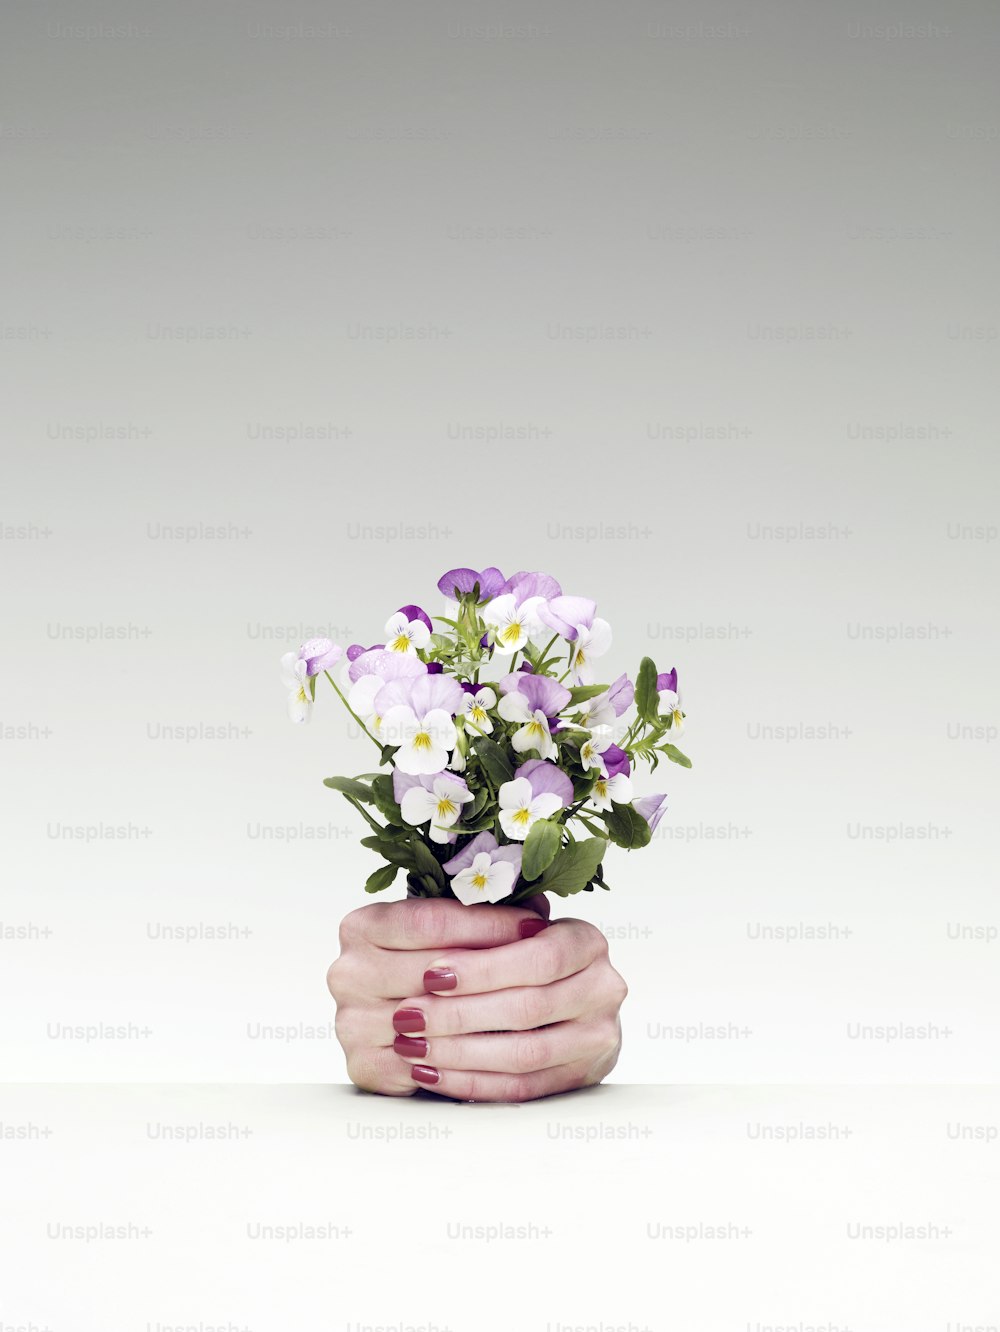 Eine Frauenhand, die einen Blumenstrauß hält